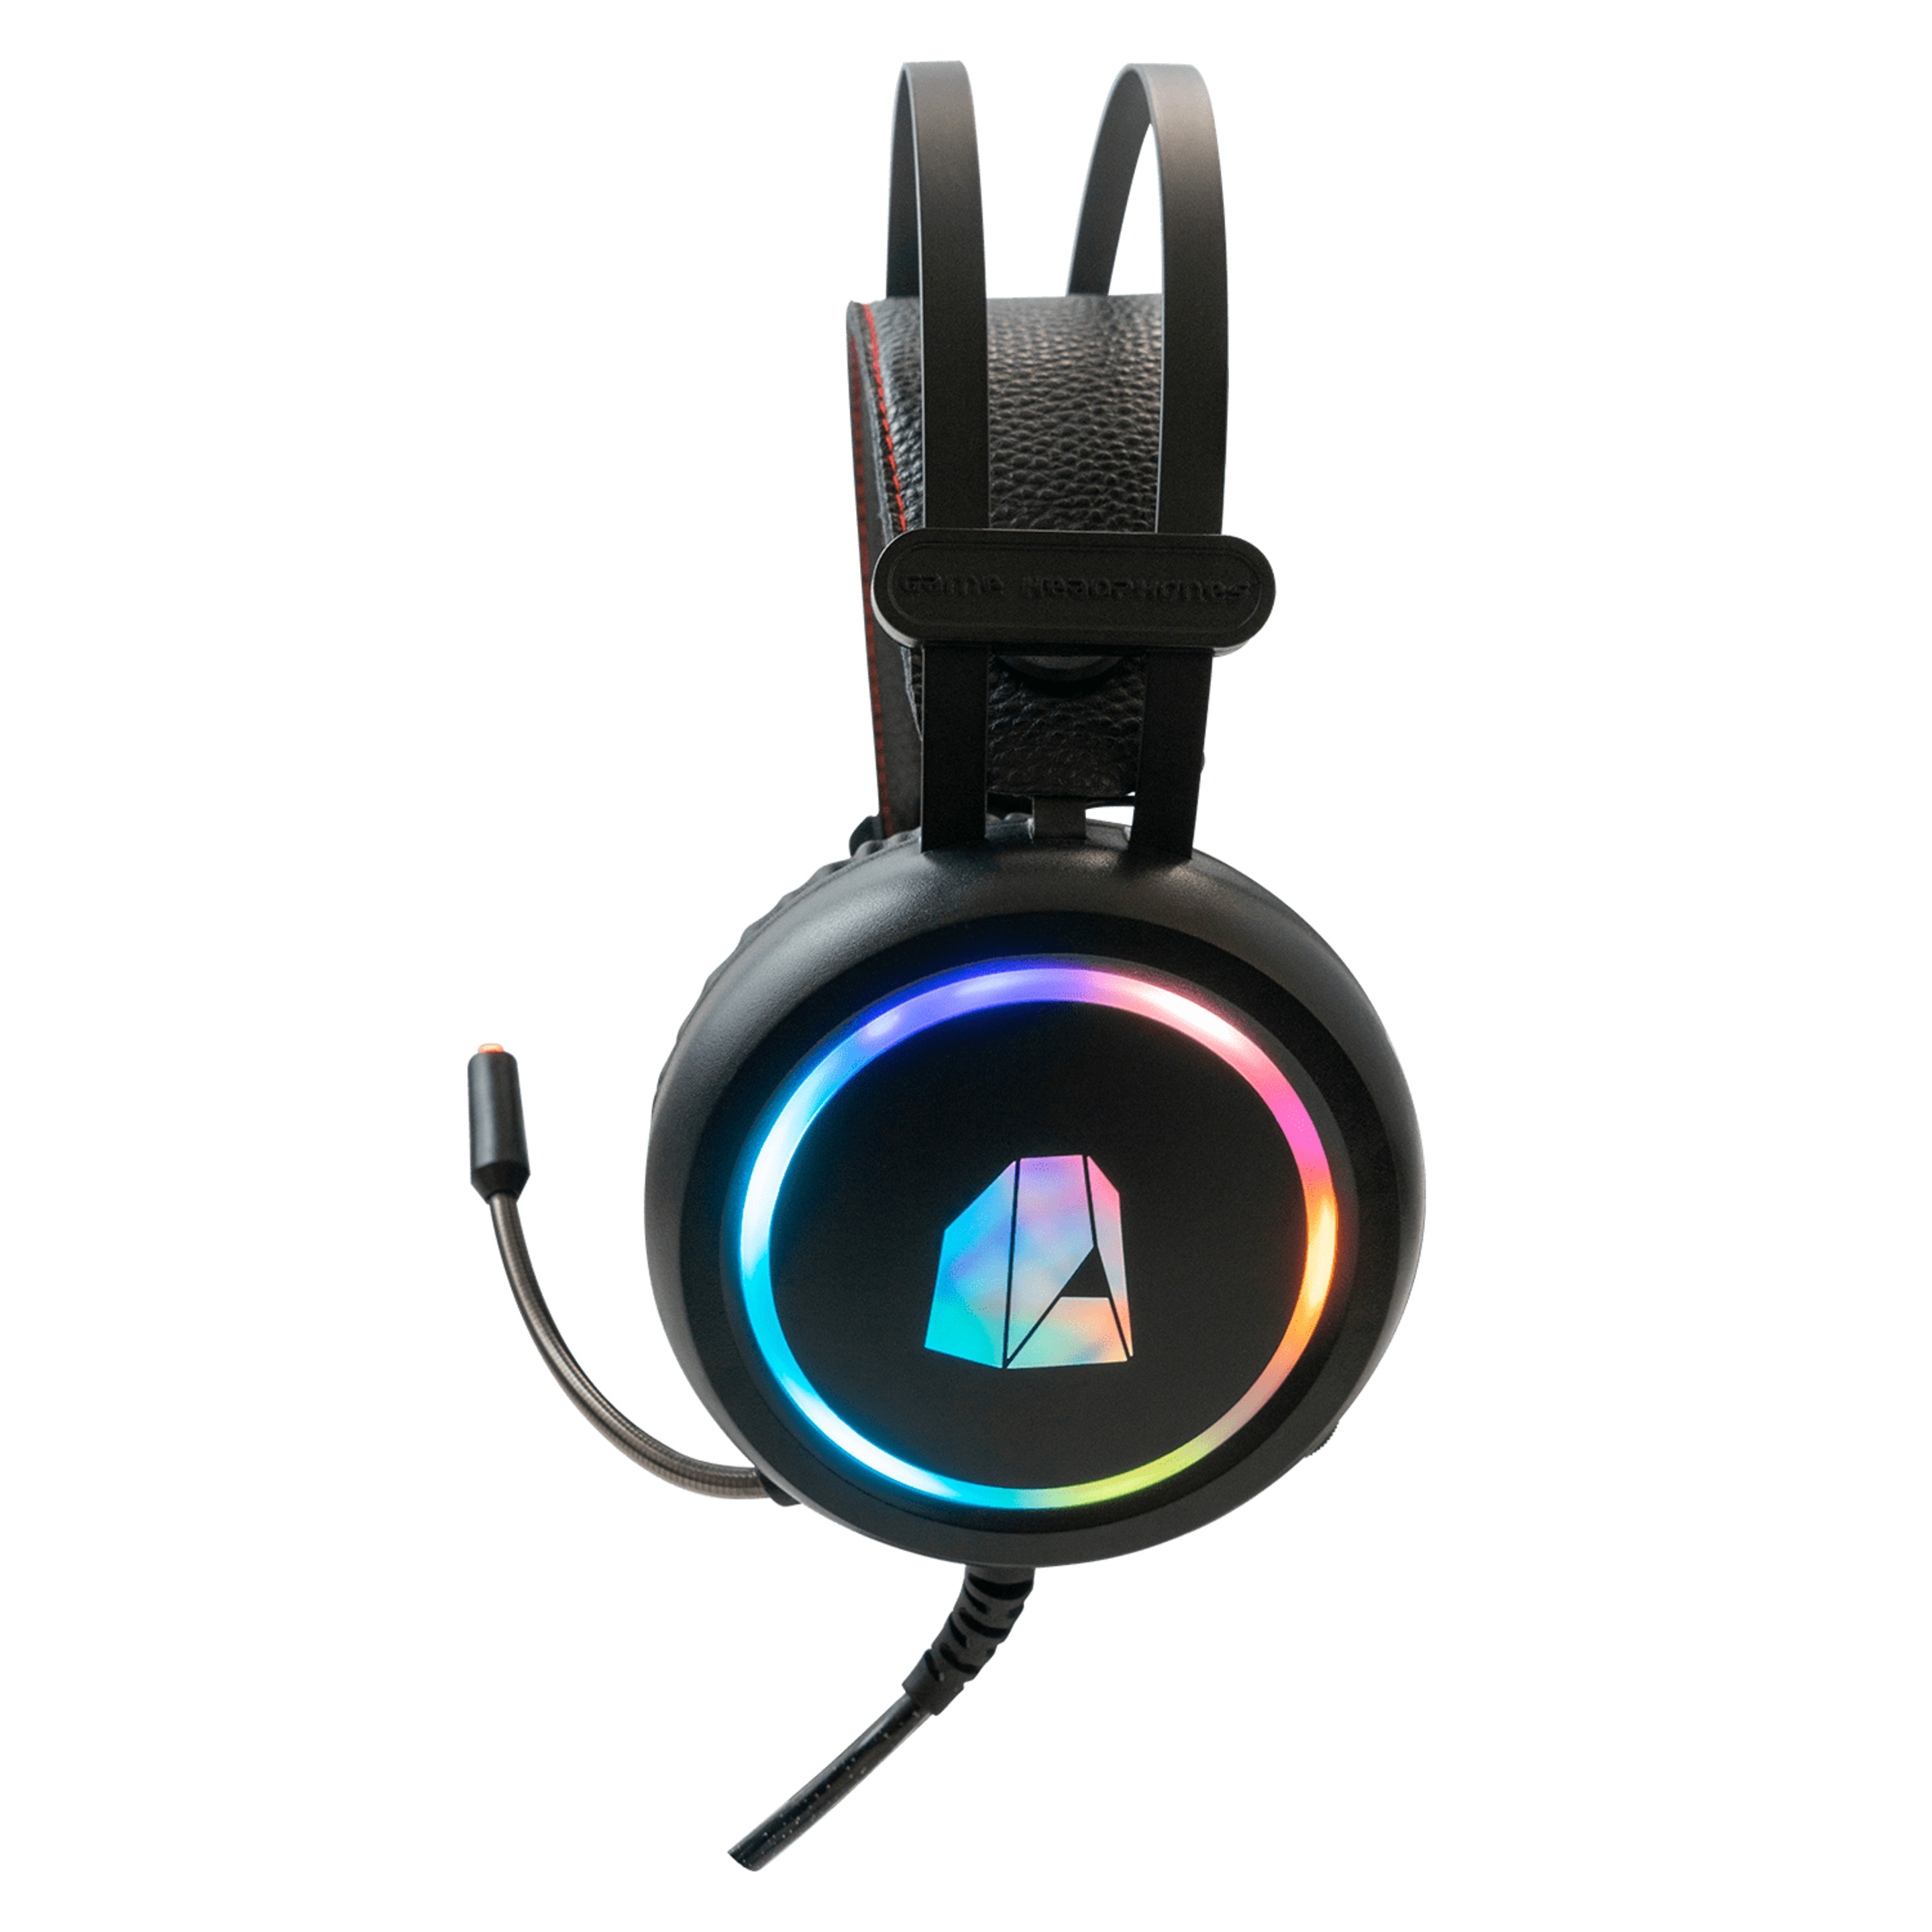 Headset Gaming Nitropc Nh10 Para Juegos Y Escuchar Música En Pc Con Iluminación Rgb Personalizable - Negro  MKP